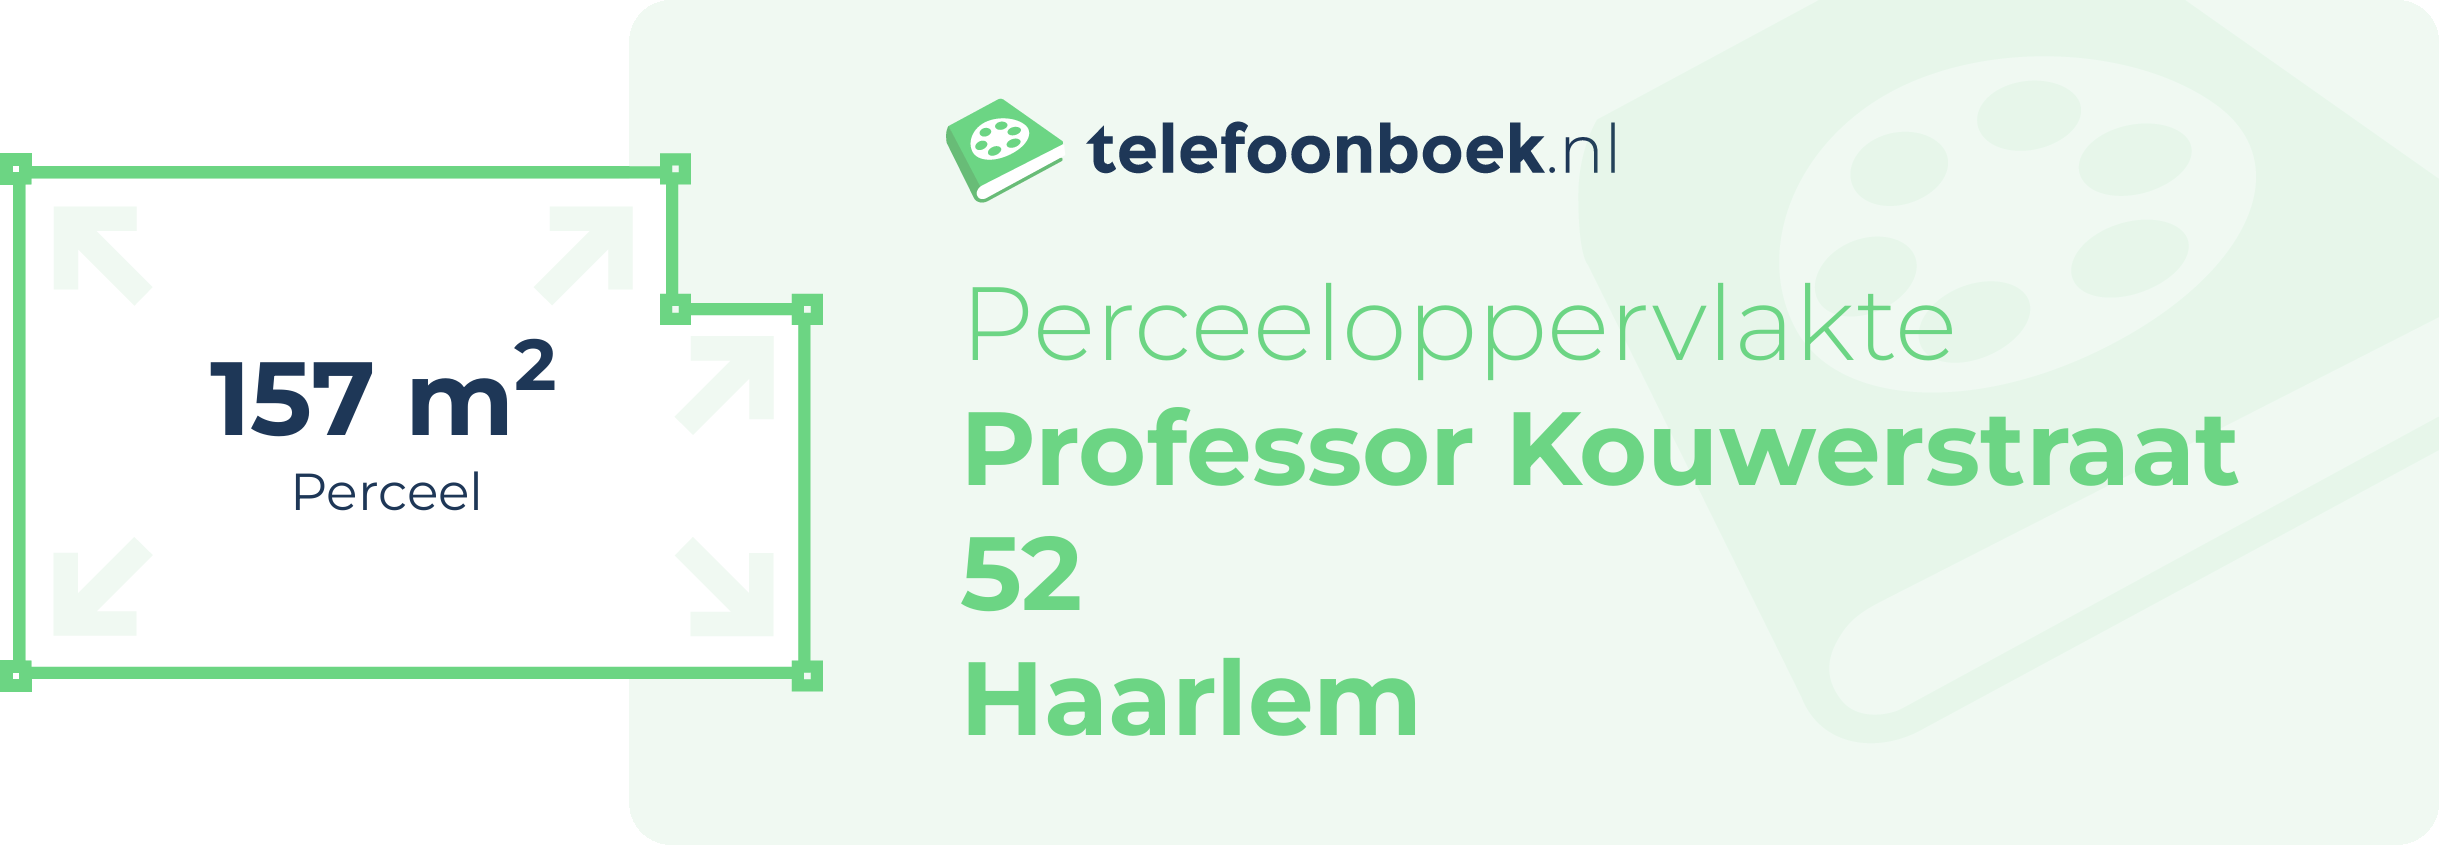 Perceeloppervlakte Professor Kouwerstraat 52 Haarlem